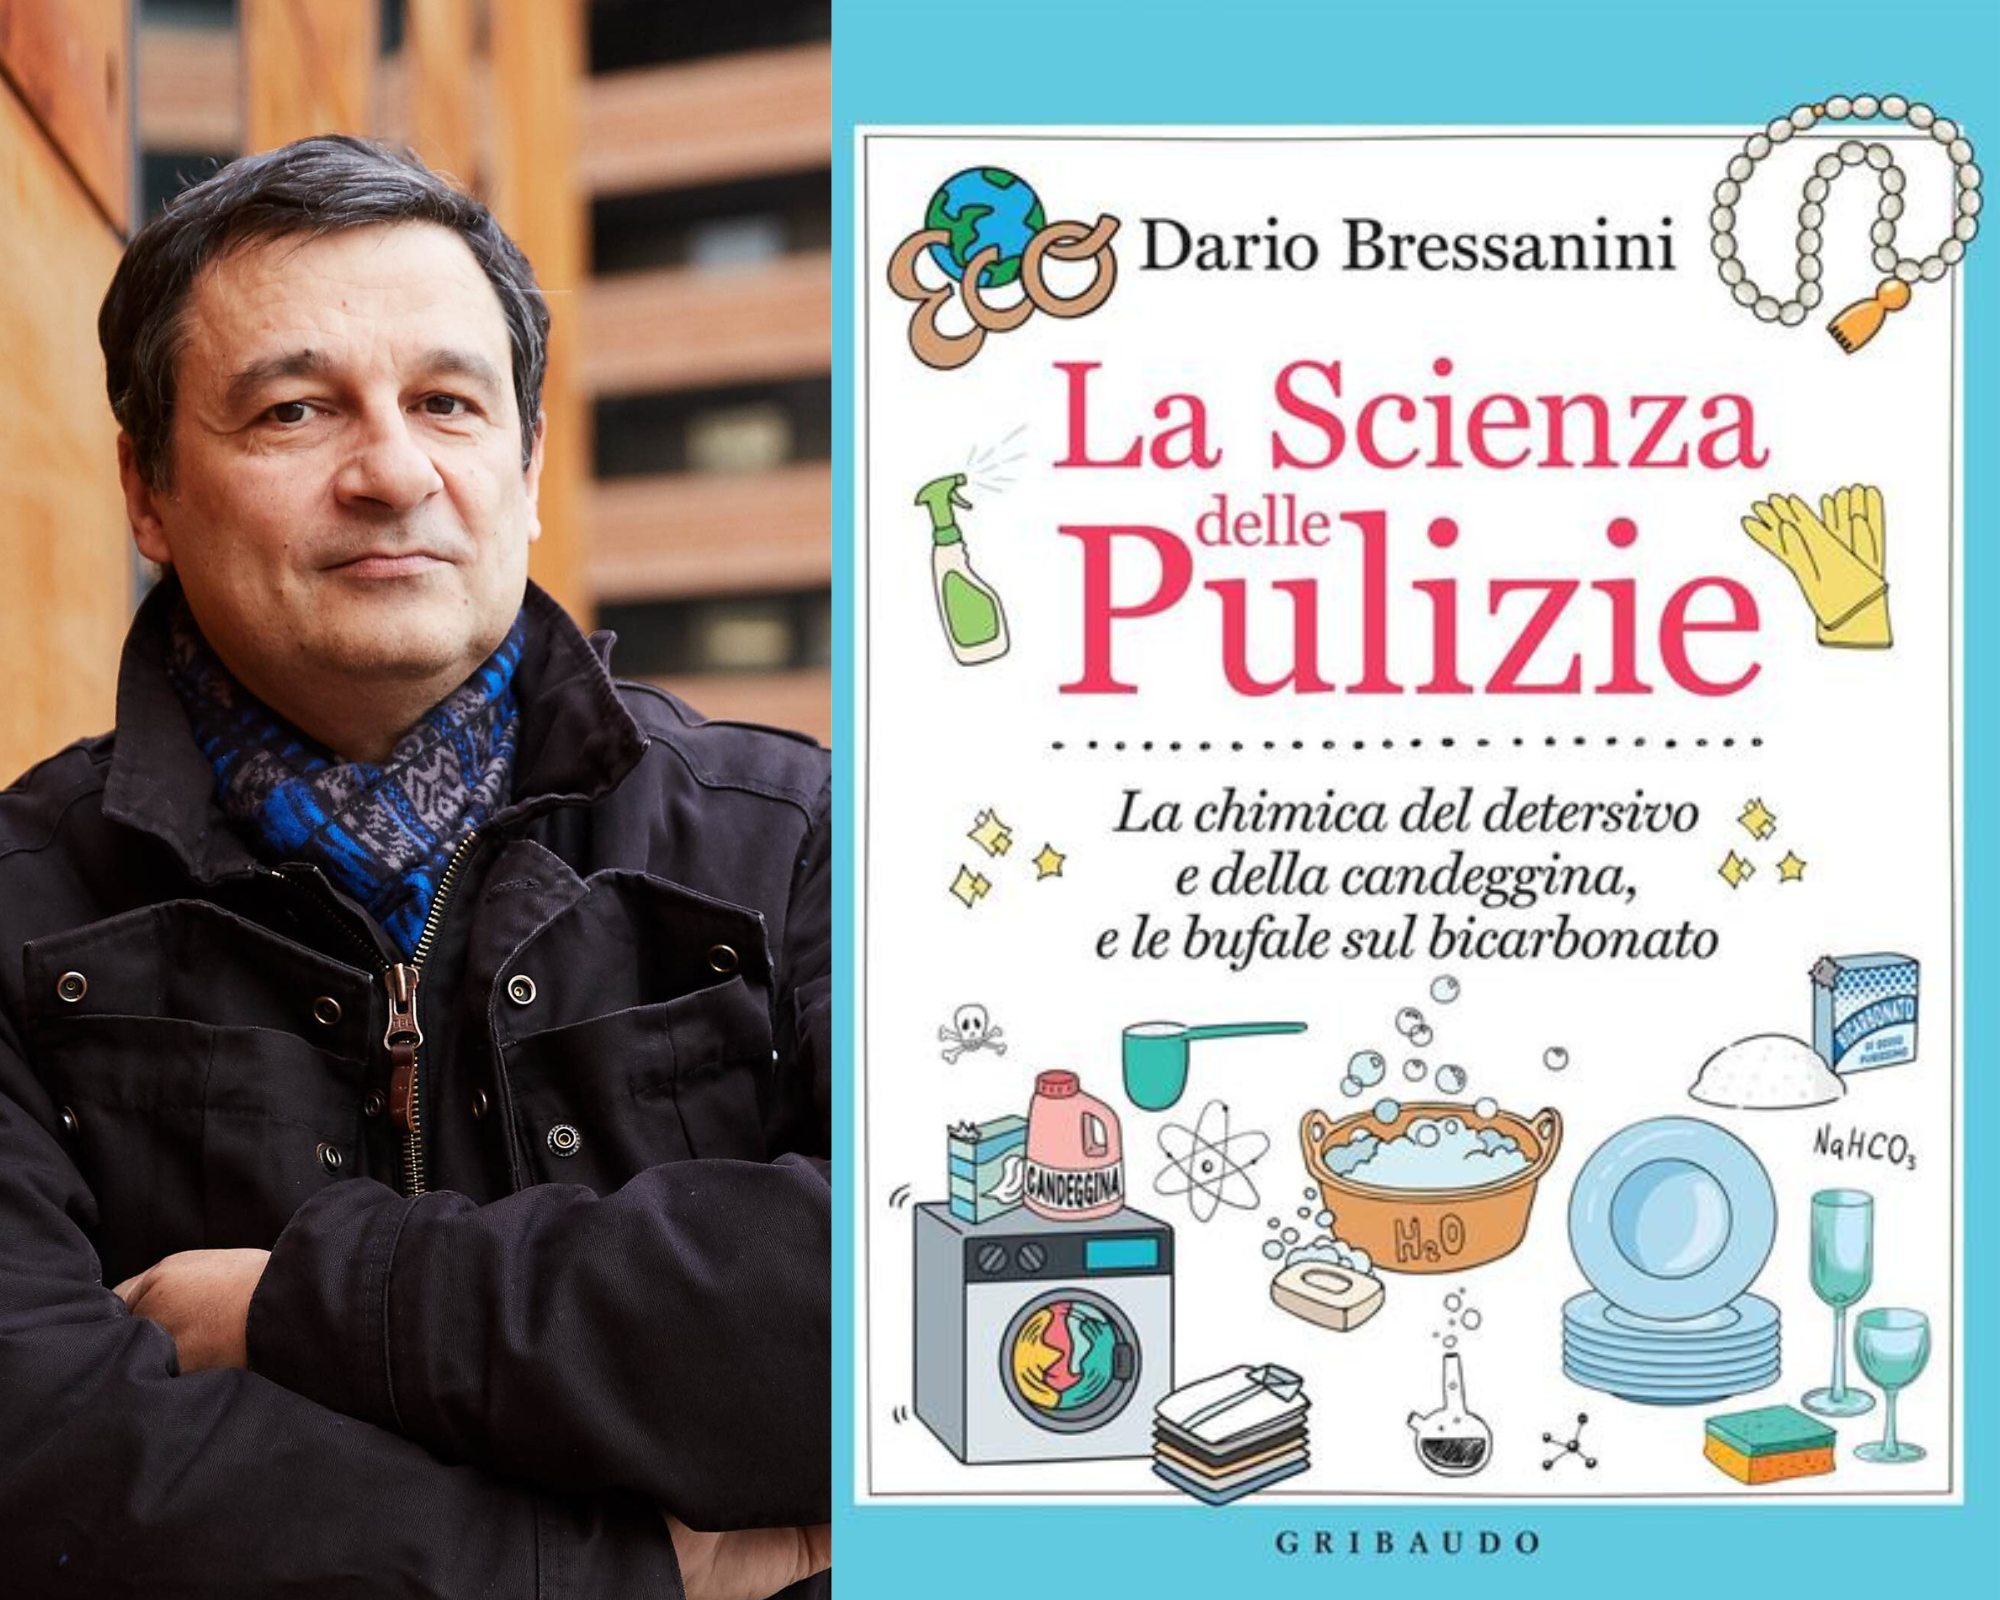 Trucchi e segreti delle pulizie: i consigli di Dario Bressanini